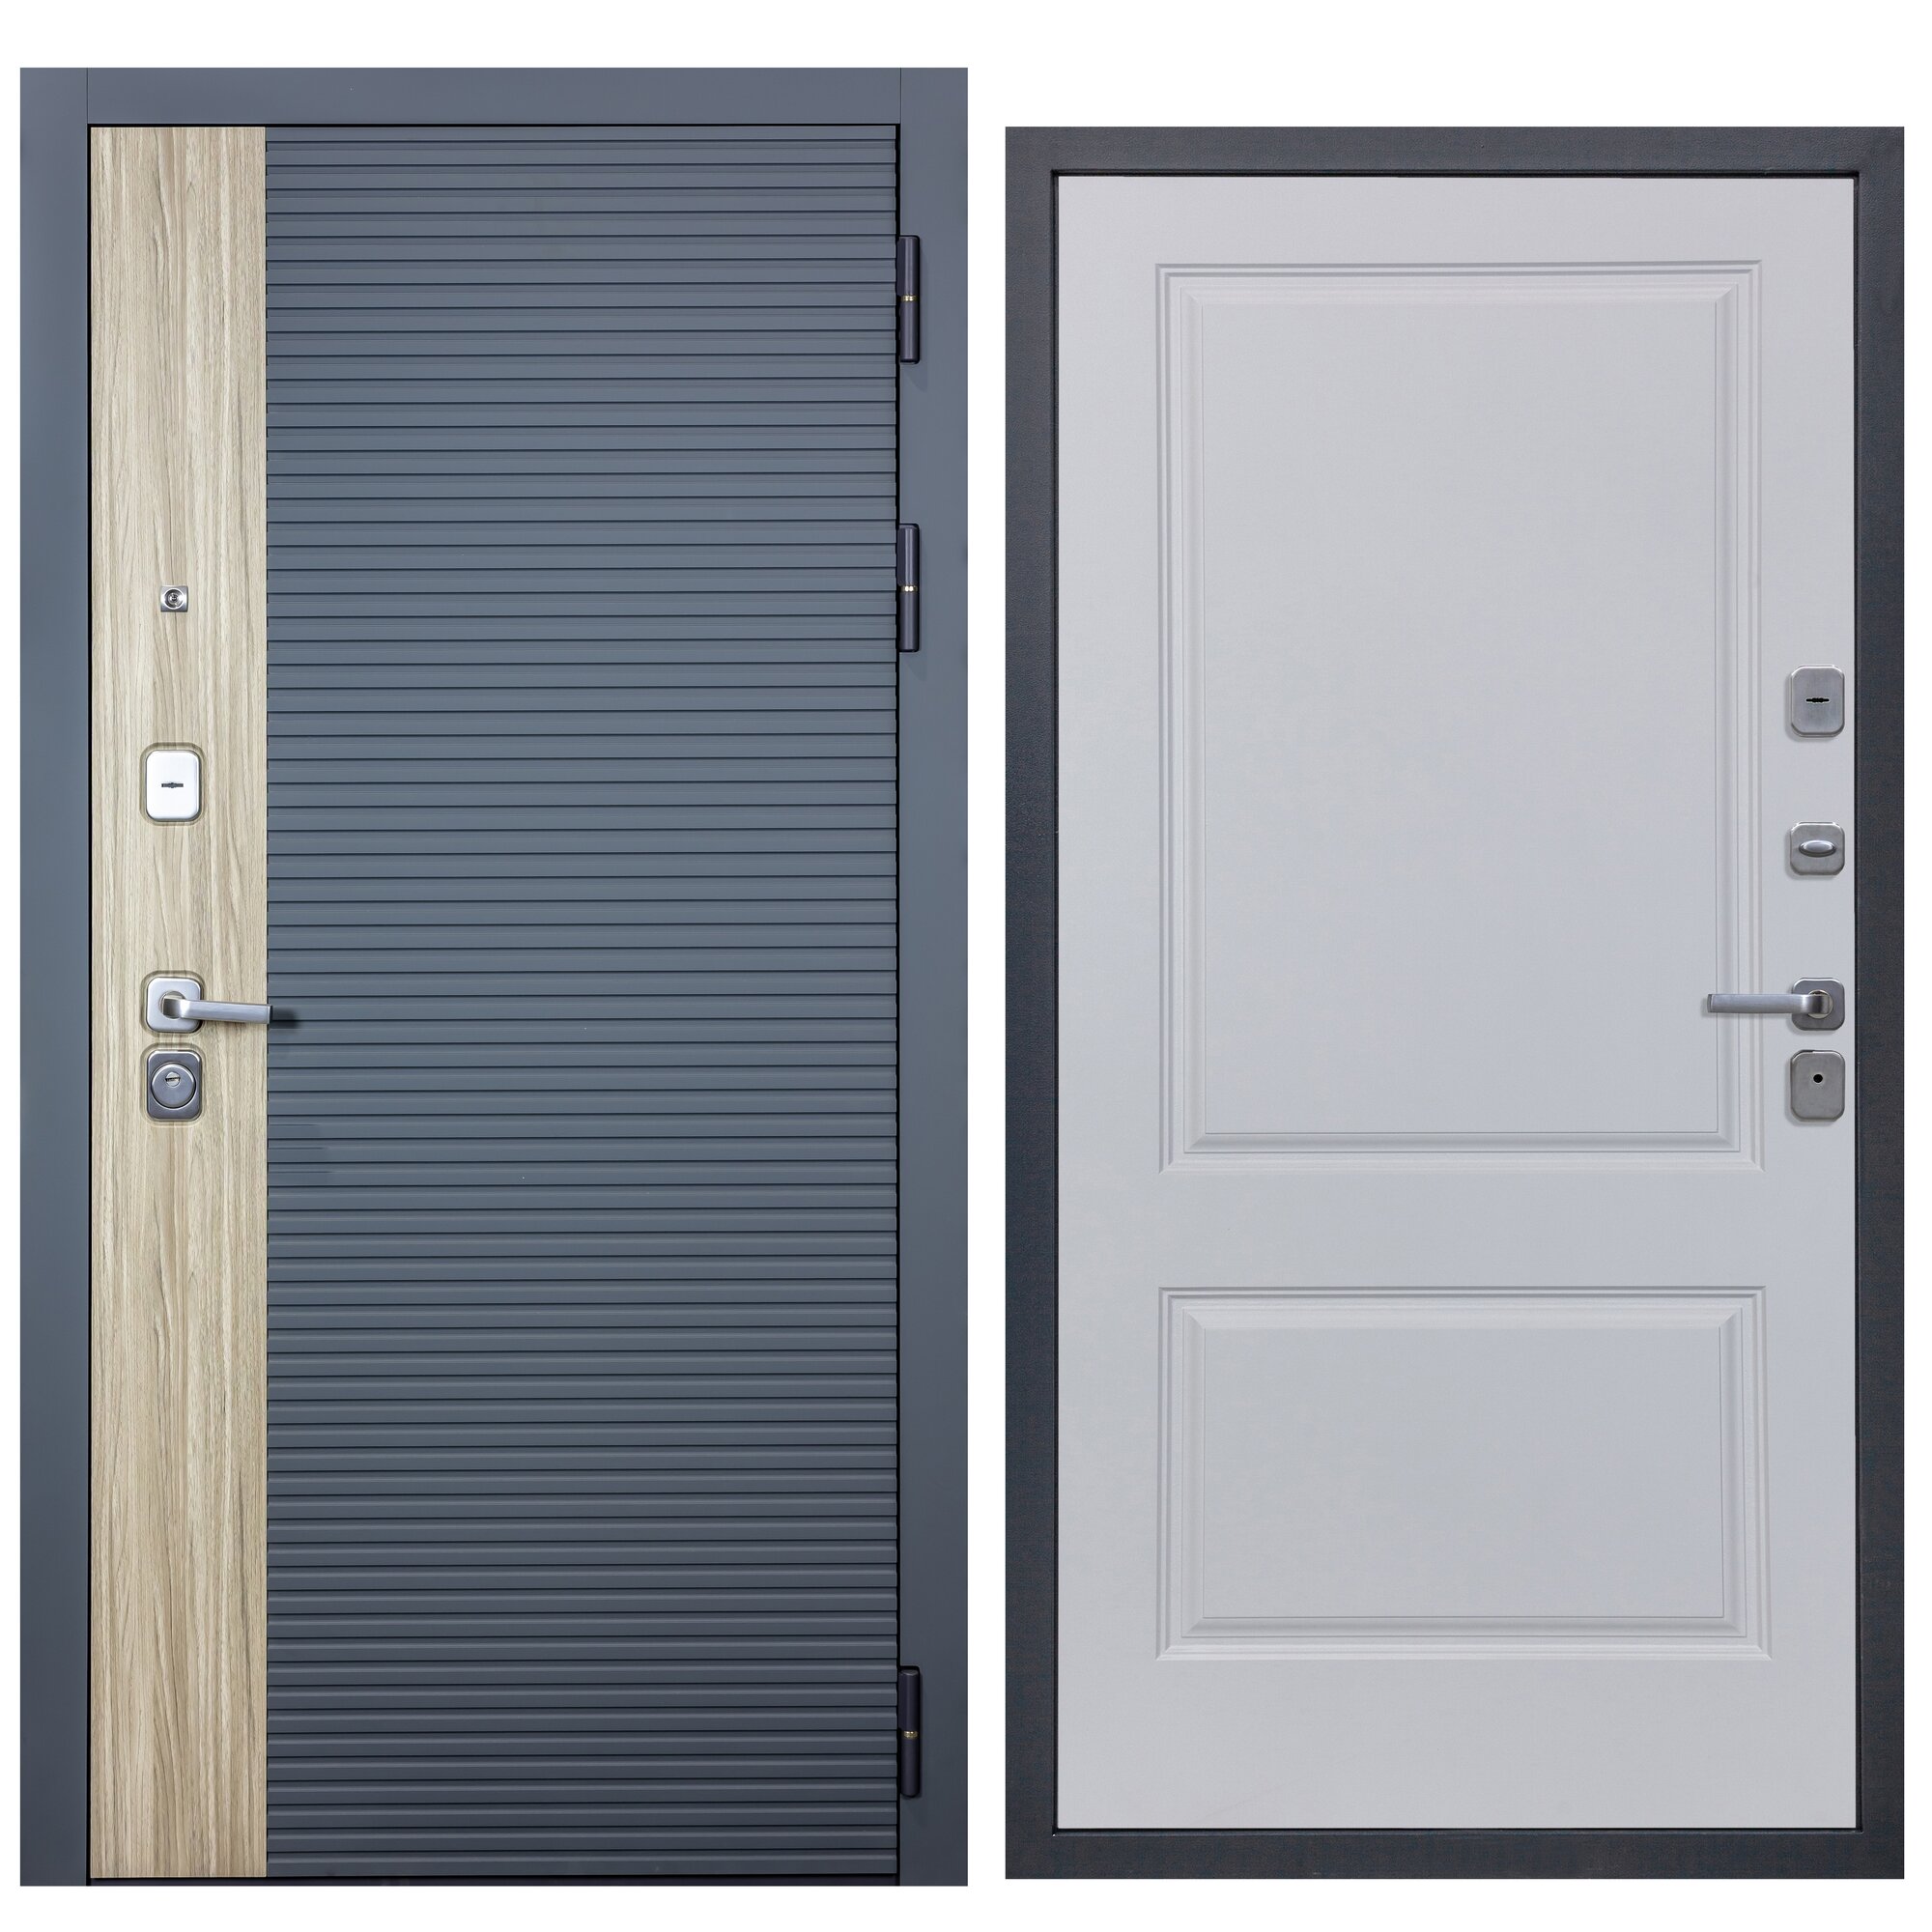 Дверь входная металлическая DIVA-76 2050*960 Правая (Дуб / Серая - Д7 Белый софт), тепло-шумоизоляция, антикоррозийная защита для квартиры.